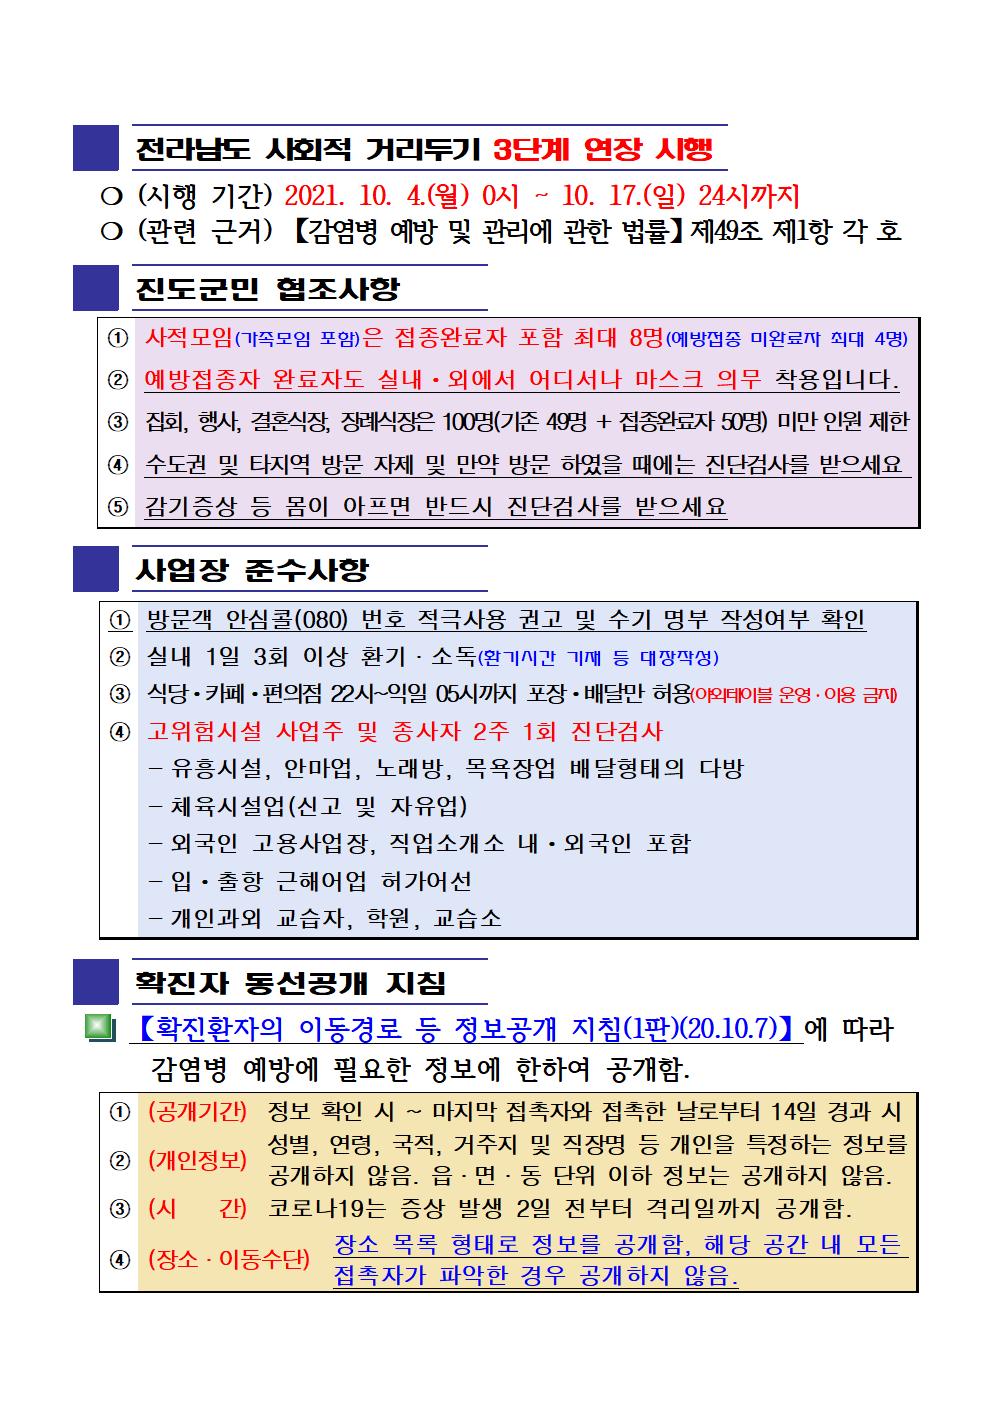 2021년 코로나19 대응 일일상황보고(10월 9일 24시 기준) 첨부#2